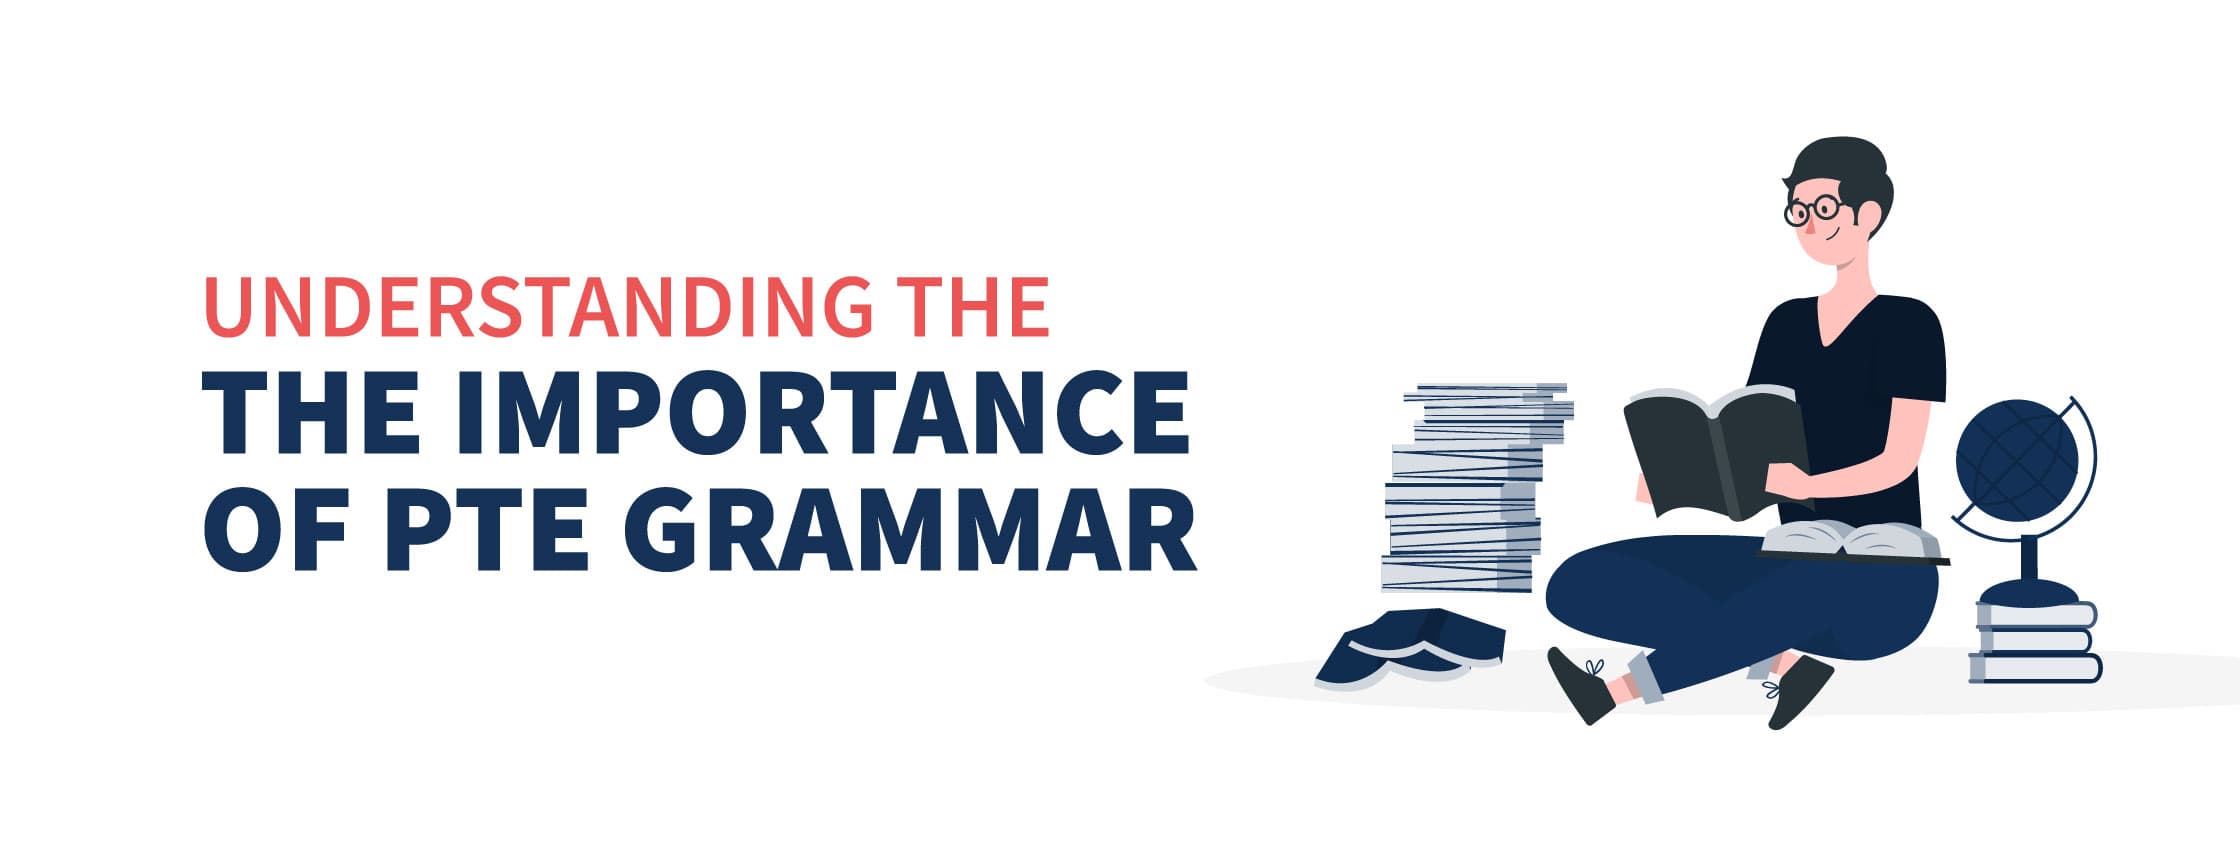 Understanding the Importance of PTE Grammar